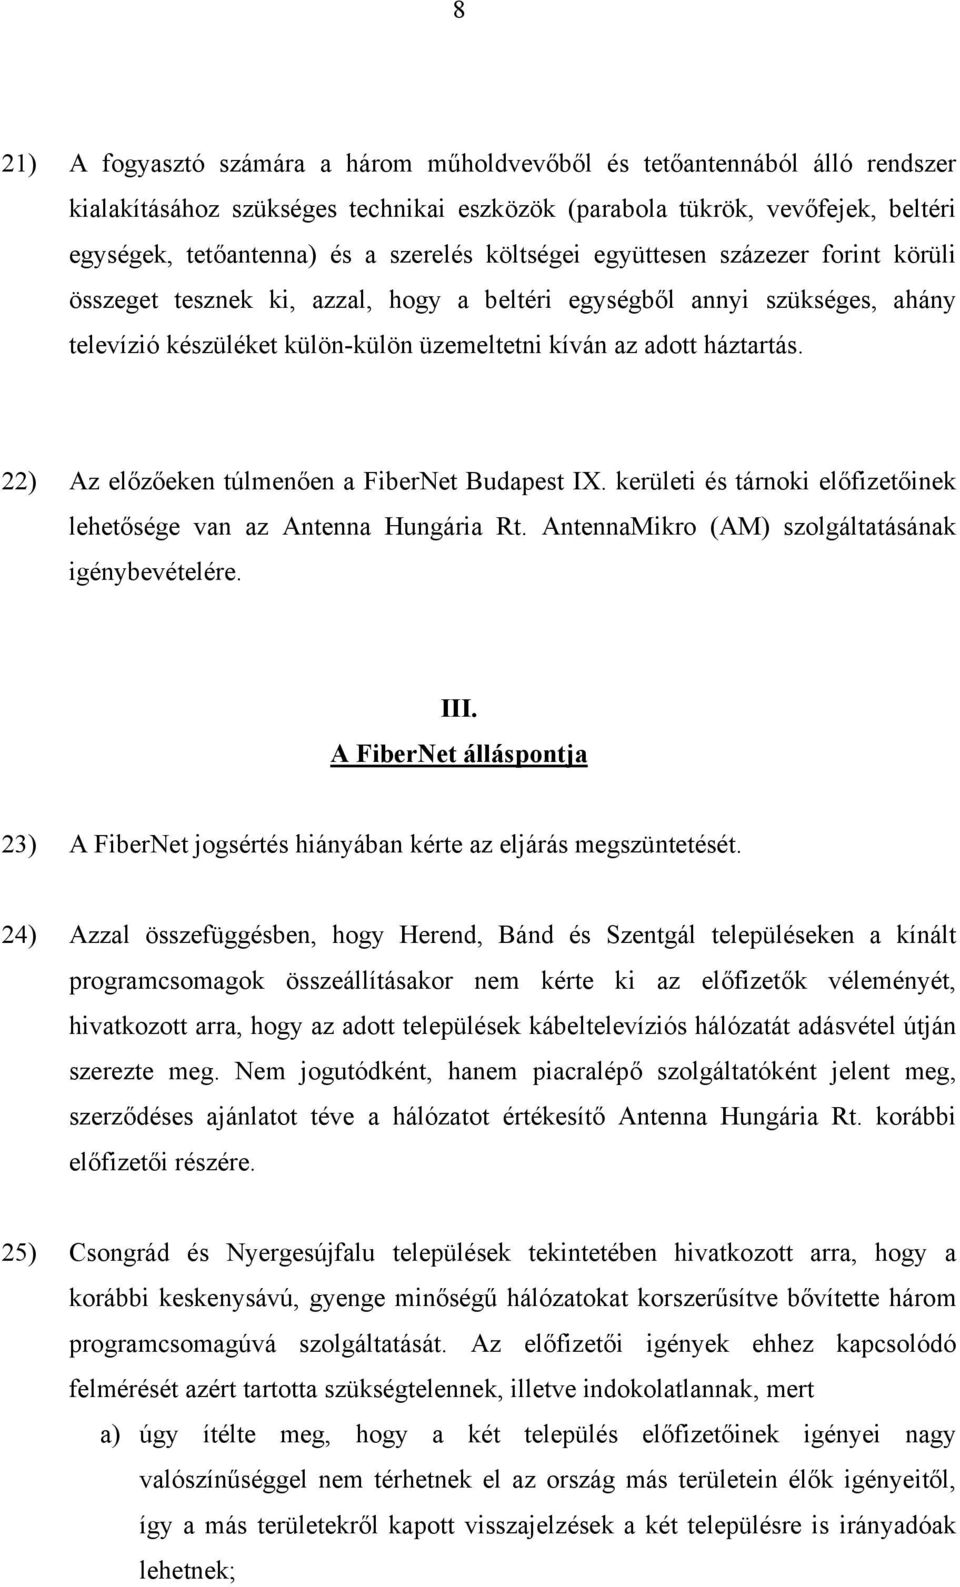 22) Az előzőeken túlmenően a FiberNet Budapest IX. kerületi és tárnoki előfizetőinek lehetősége van az Antenna Hungária Rt. AntennaMikro (AM) szolgáltatásának igénybevételére. III.